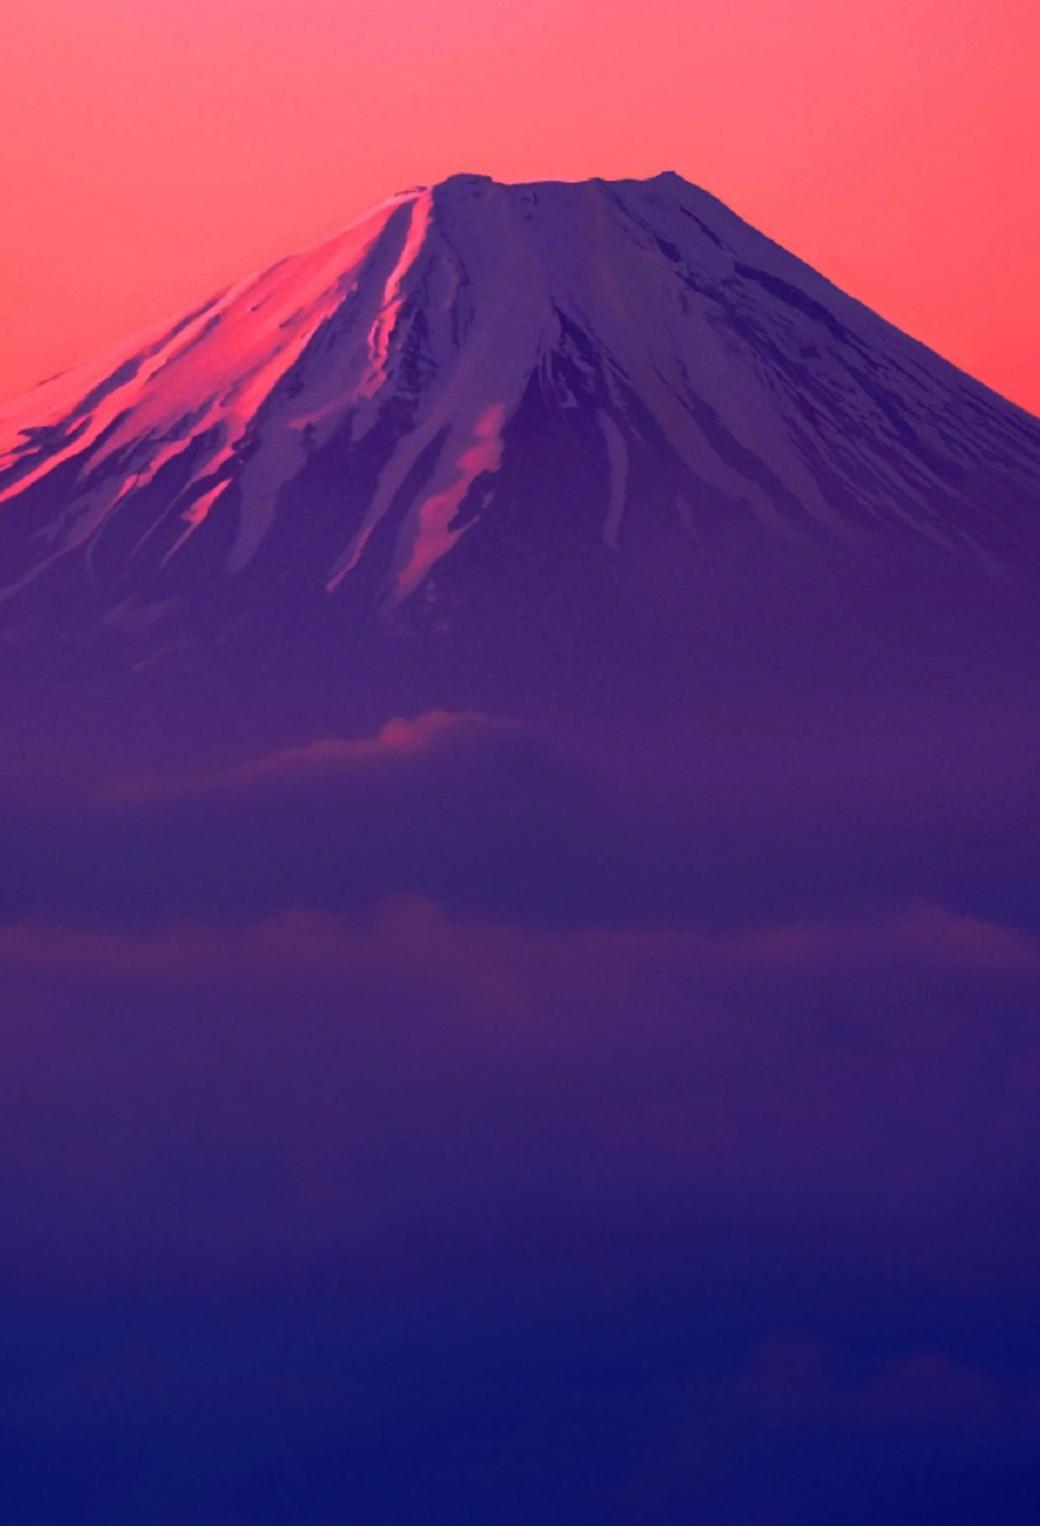 赤富士 富士山 17 Iphone壁紙 すべて1136 X 640pxサイズ